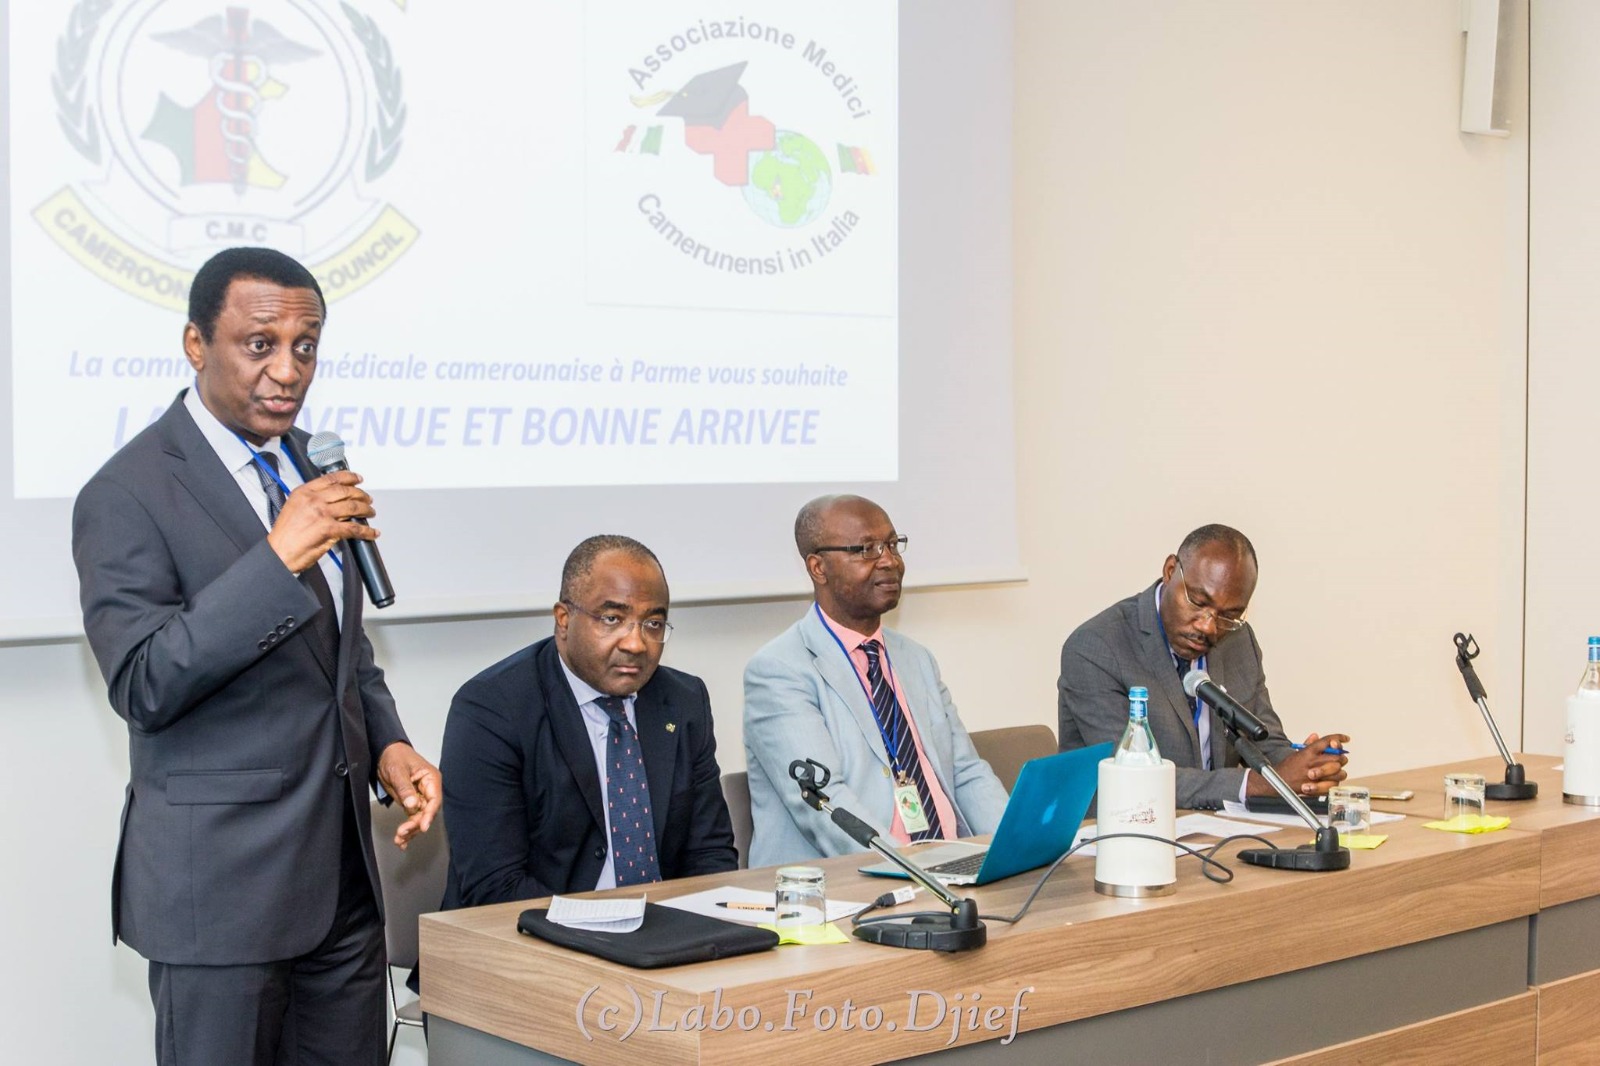 Medici del Camerun a Parma: due giorni di iniziative